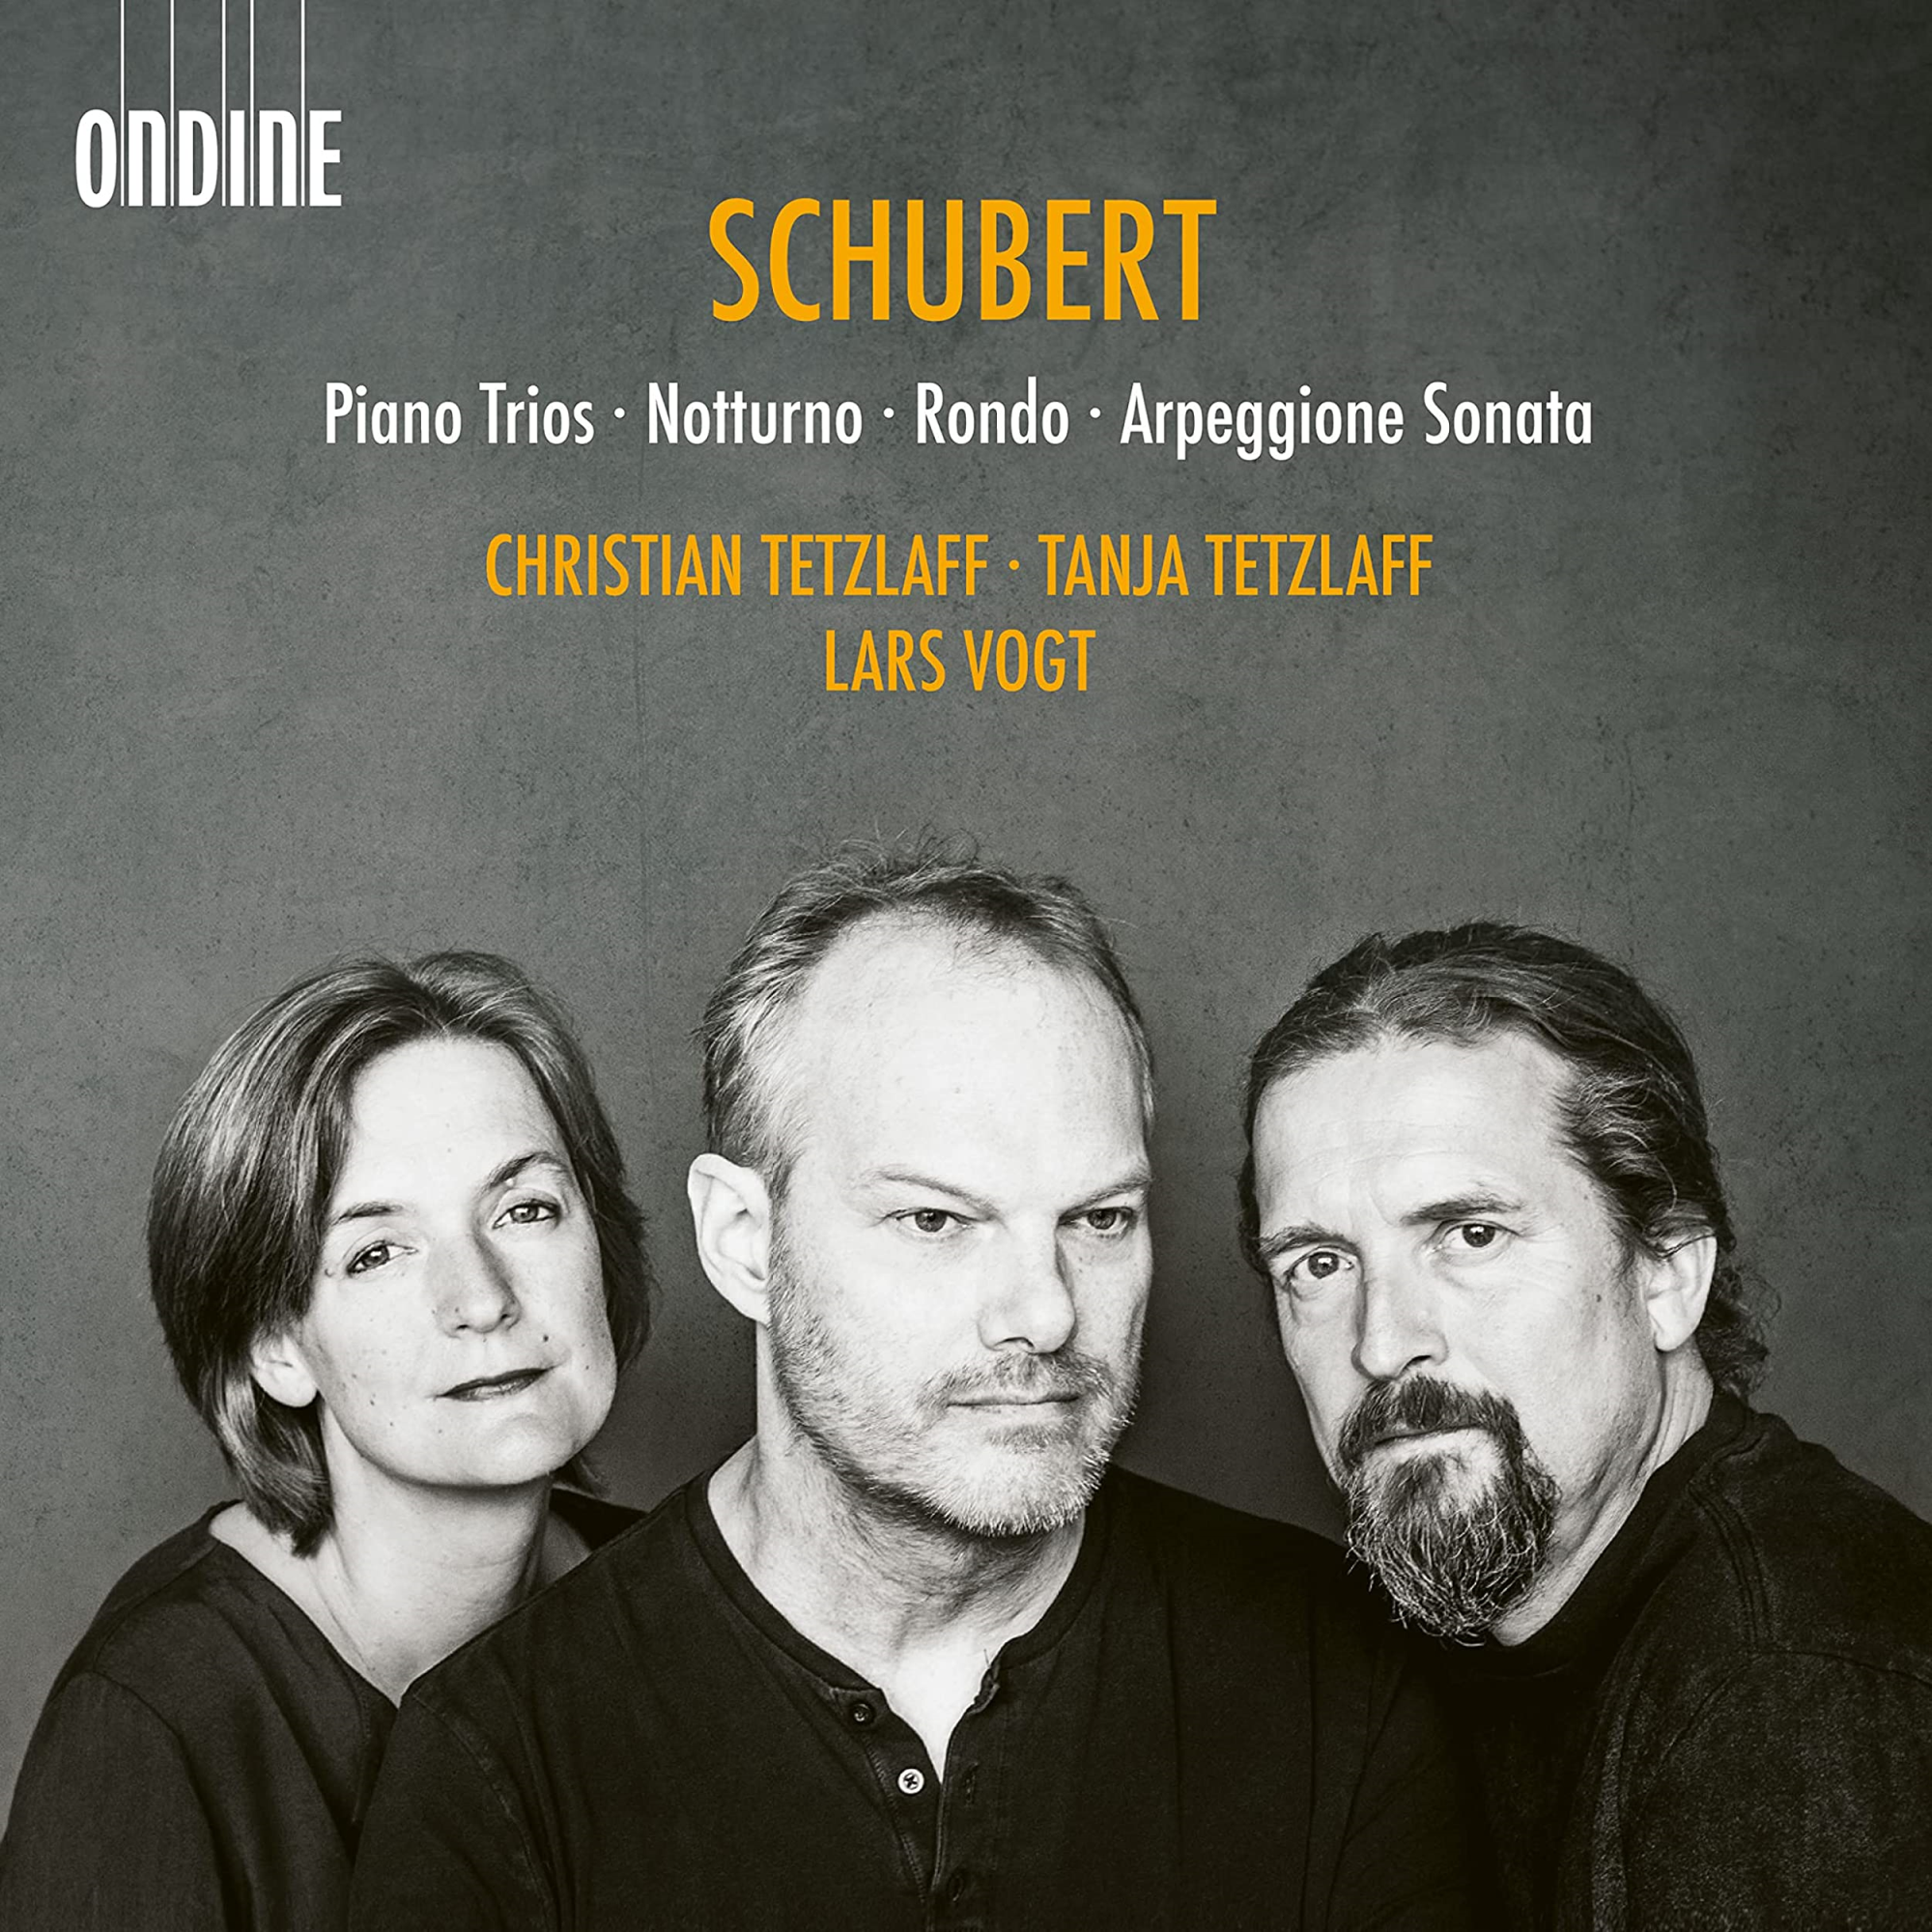 Audio Cd Franz Schubert - Piano Trios, Notturno, Rondo, Arpeggione Sonata (2 Cd) NUOVO SIGILLATO, EDIZIONE DEL 20/01/2023 SUBITO DISPONIBILE